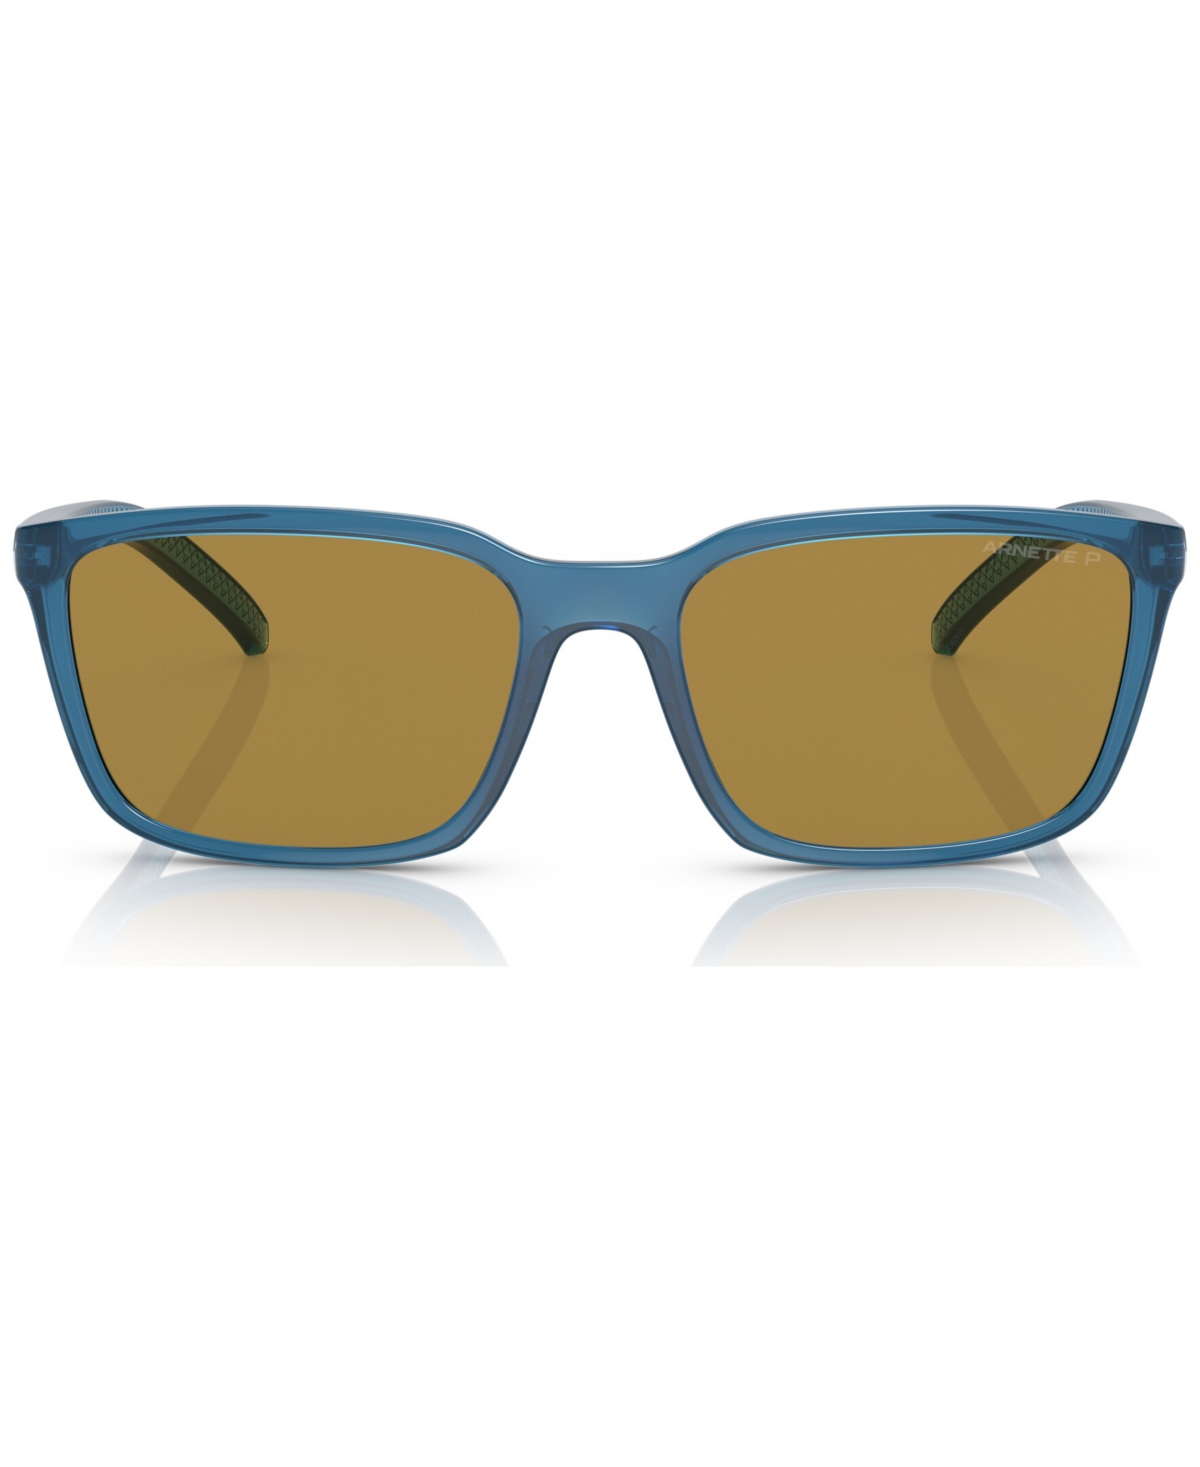 Men's Polarized Sunglasses, AN4311 - Transparent Blue